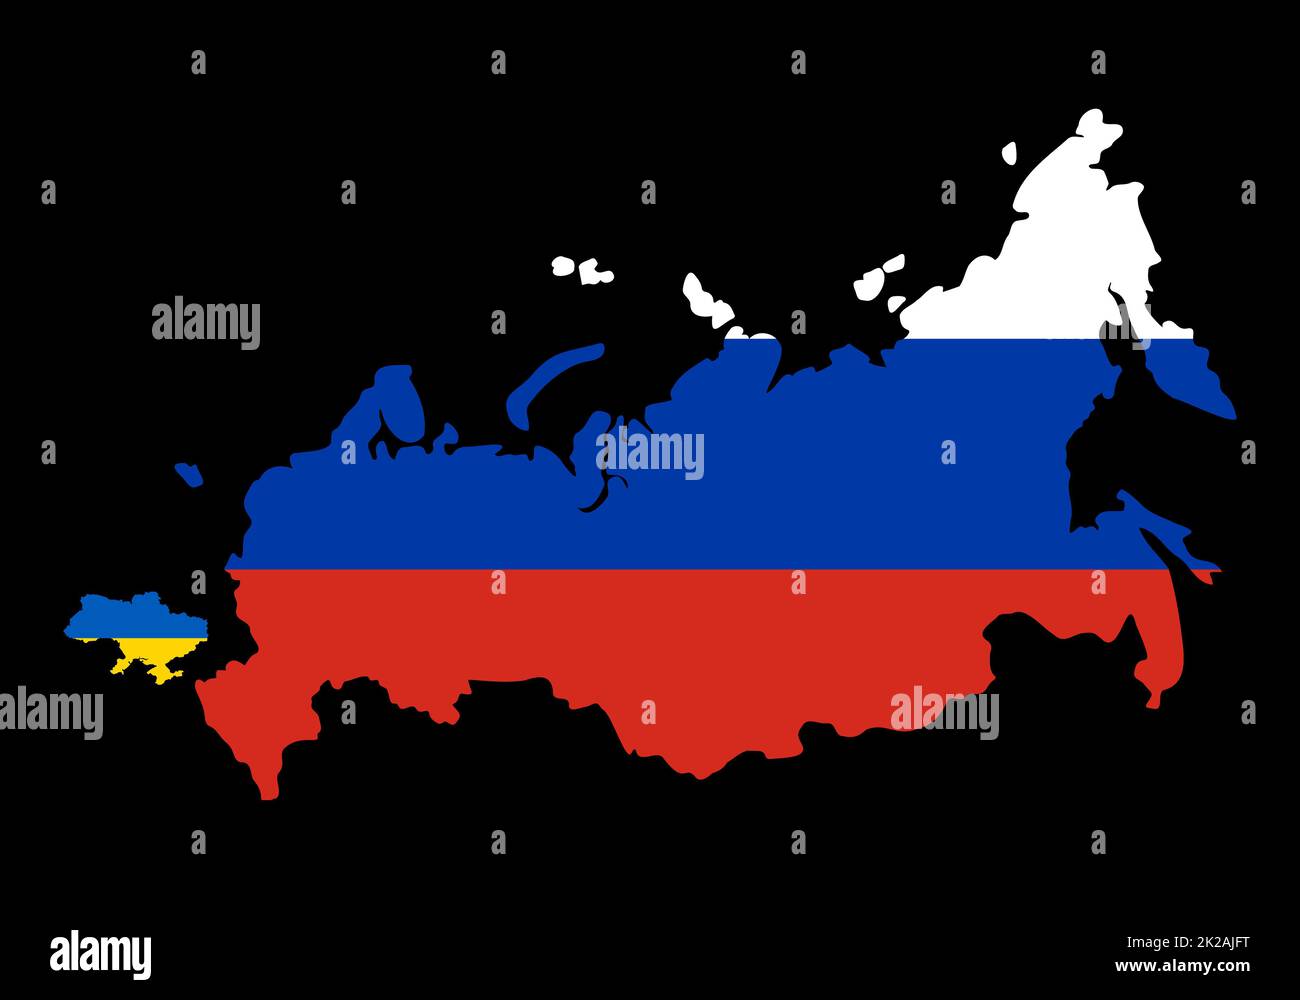 Grande Russie contre petite Ukraine. Comparez les tailles de la carte des pays sur la carte du monde. Frontières de la Russie et de l'Ukraine. Représentation des limites sur la possibilité de guerre. La Russie a lancé une attaque massive sur l'Ukraine. Banque D'Images